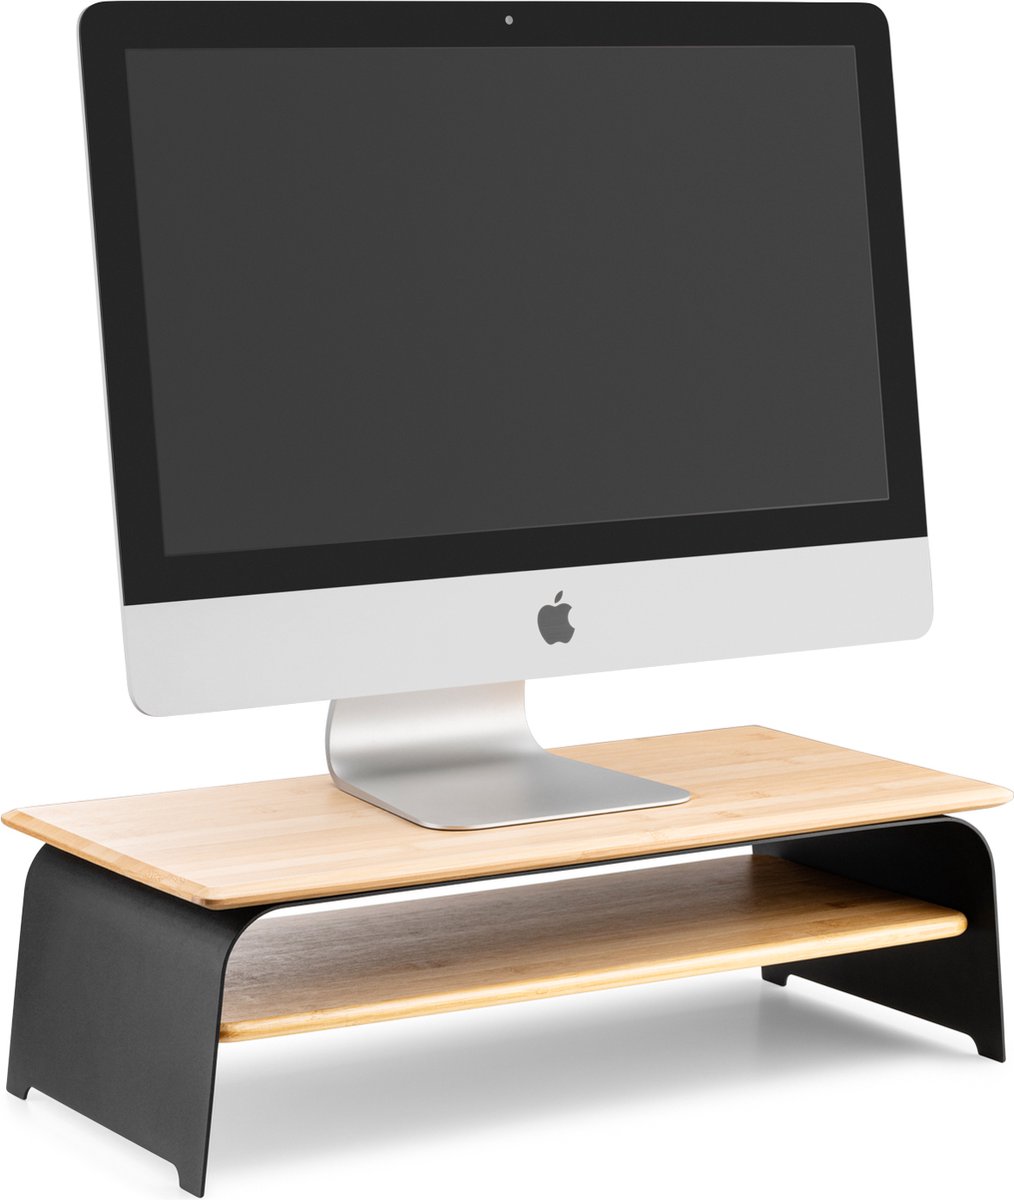 Kos Design - Monitorstandaard - Zwart - Staal en Bamboe - kantoor accessoire - beeldscherm verhoging - ergonomisch -